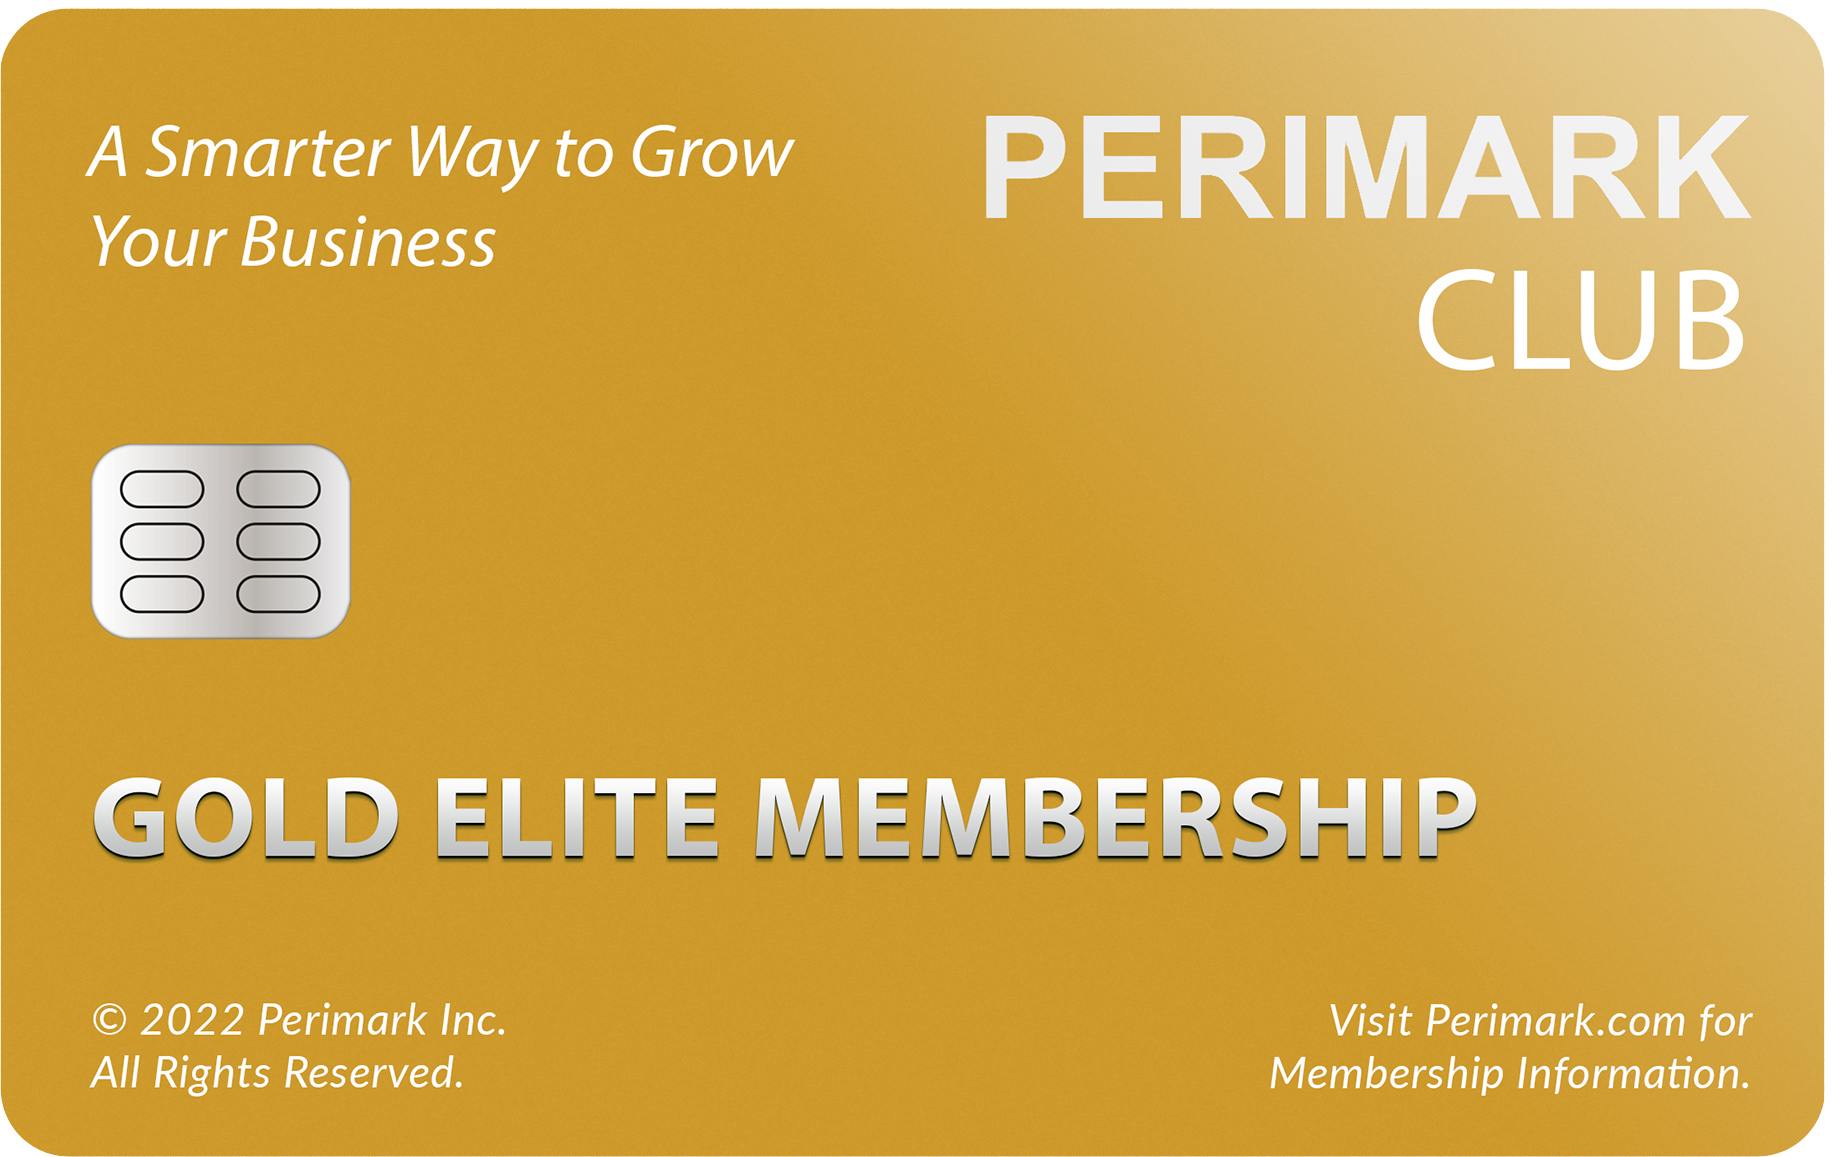 Gold Elite Membership